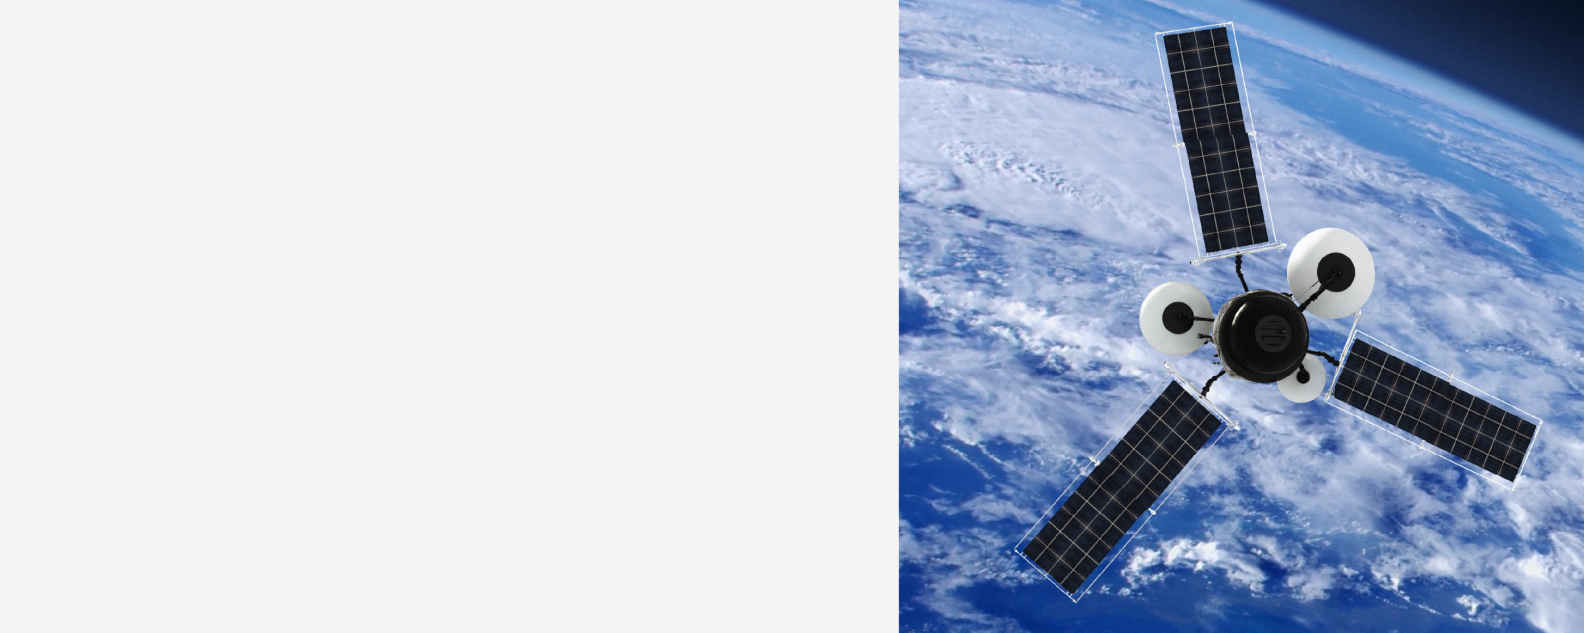 GPS o satellite meteorologico in orbita attorno alla Terra